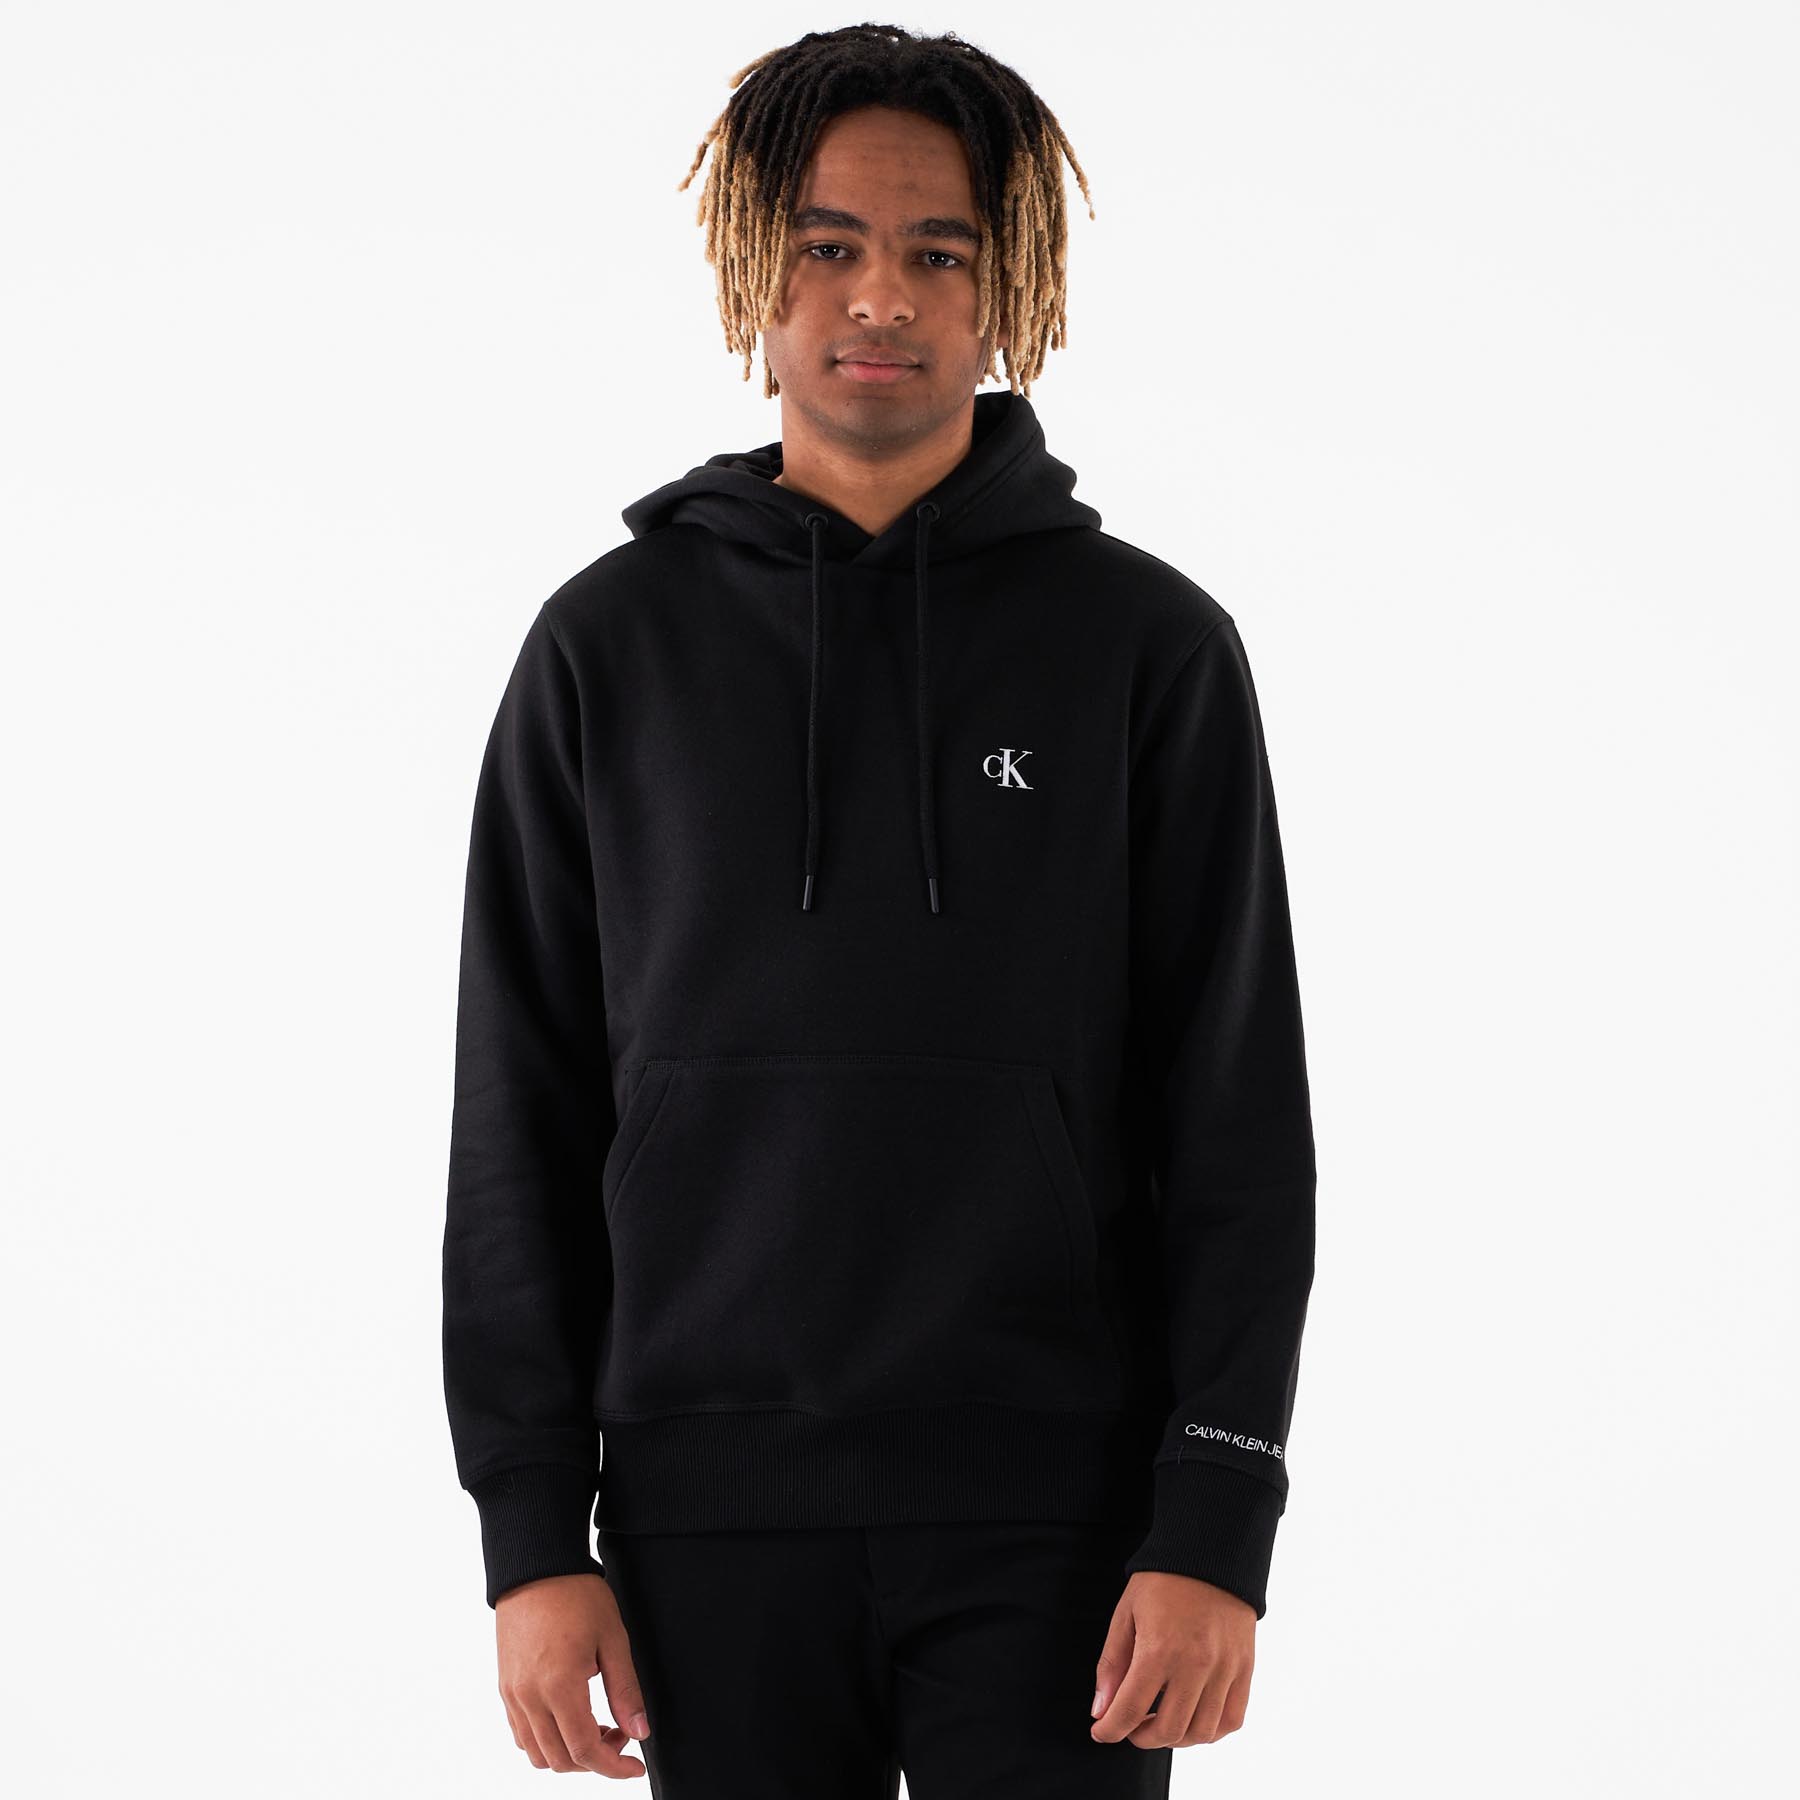 Calvin Klein - Ck essential regular hoodie - Sweatshirts og trøjer til herre - Sort - S